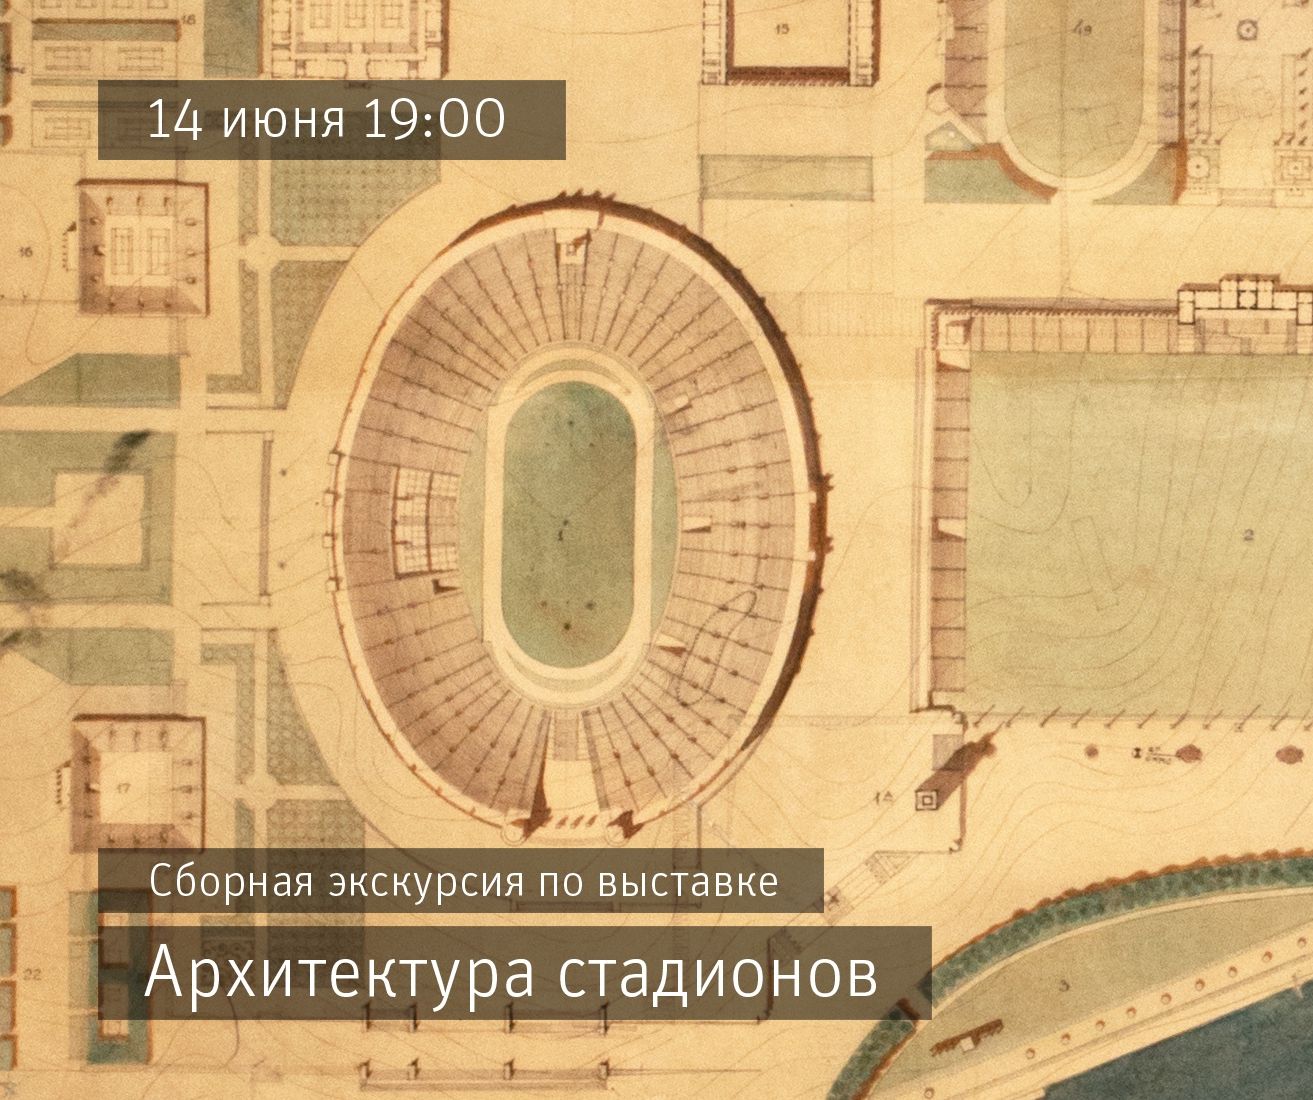 Сборная экскурсия по выставке «Архитектура стадионов»